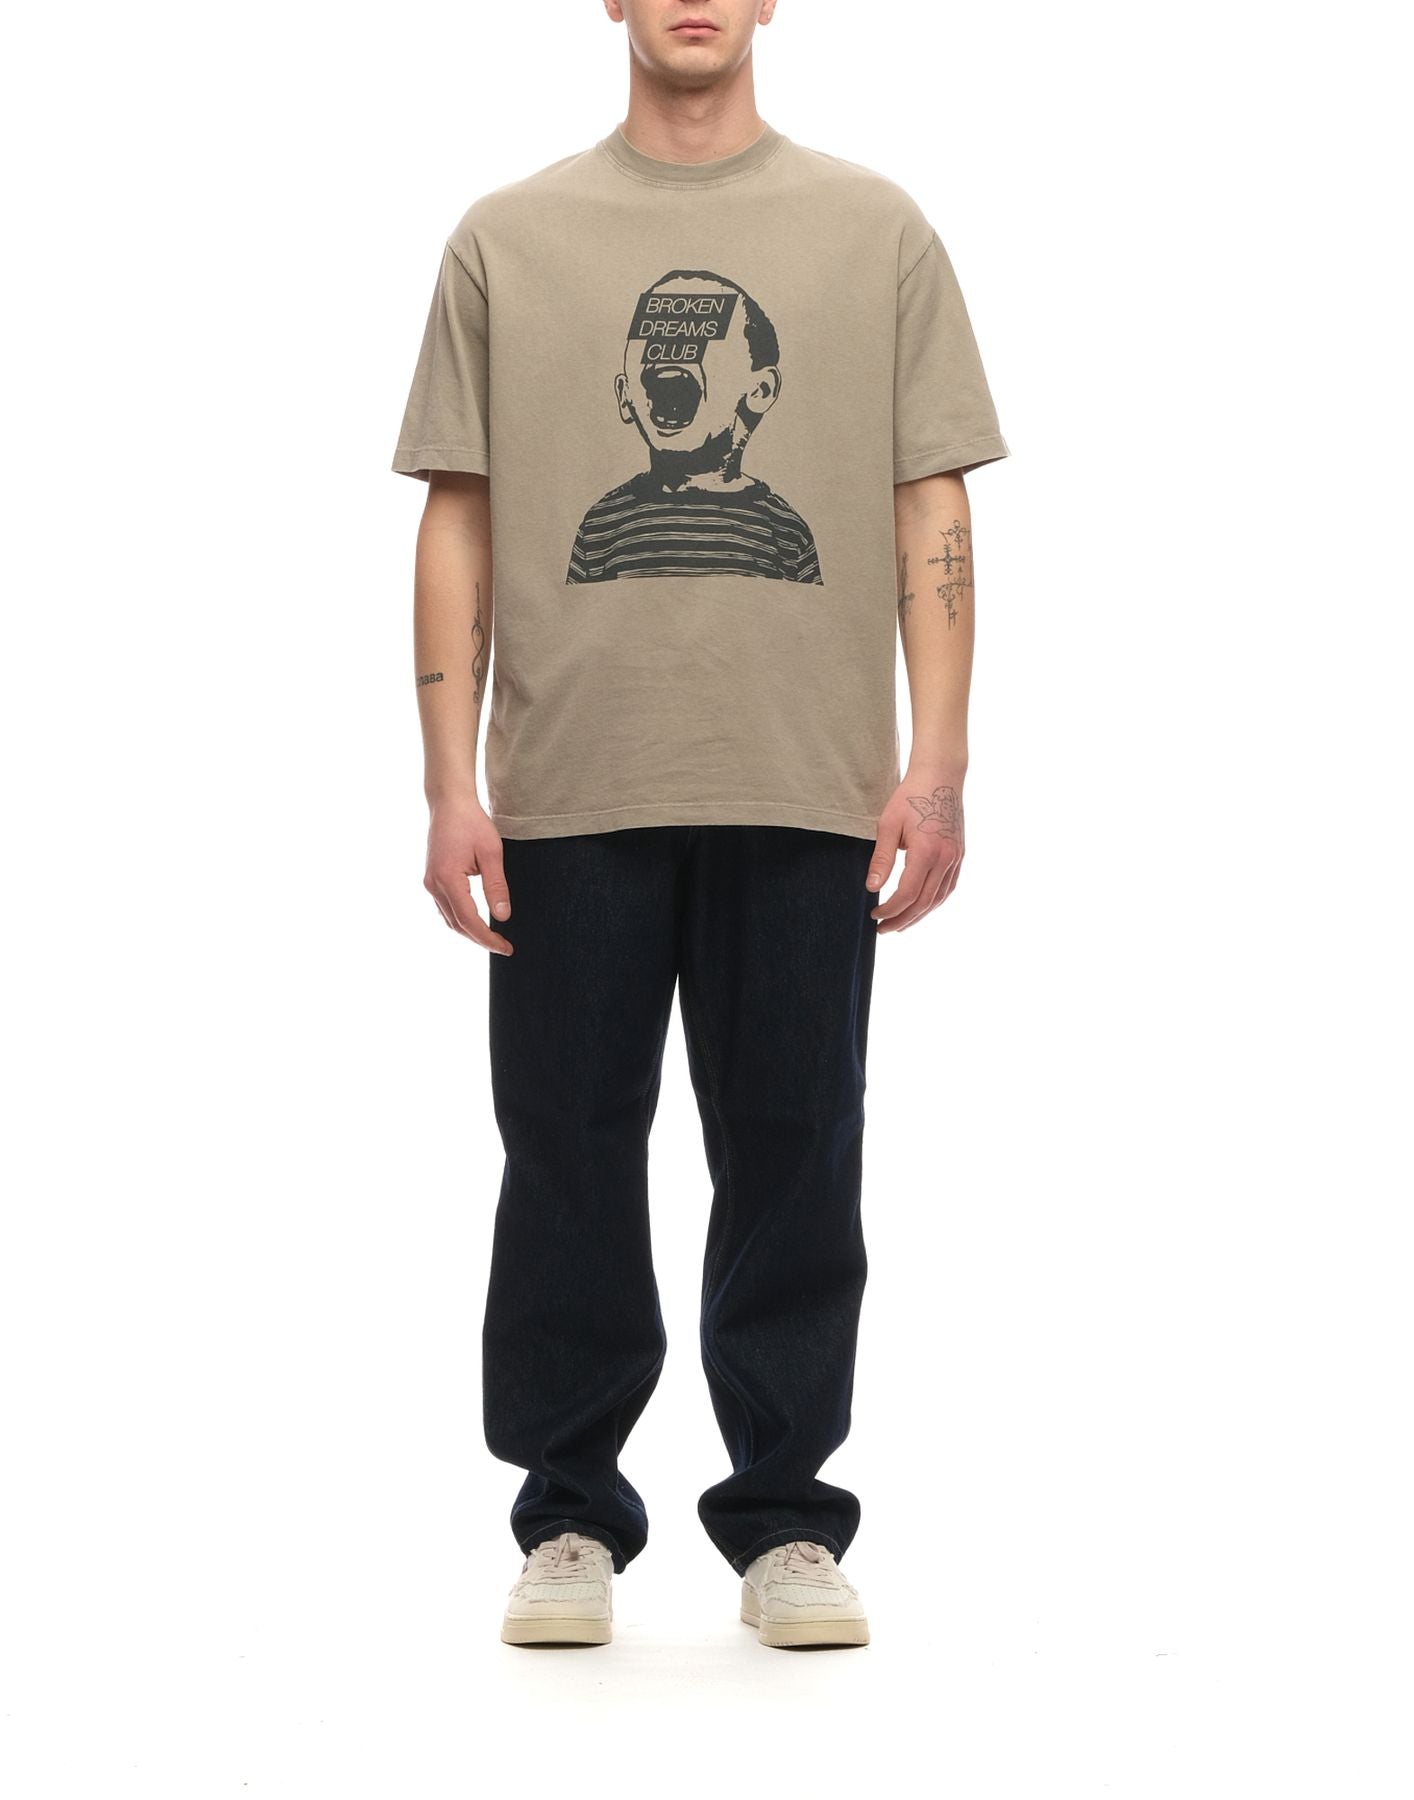 T-shirt for man P23AMU033CA160214 CANAPA Amish